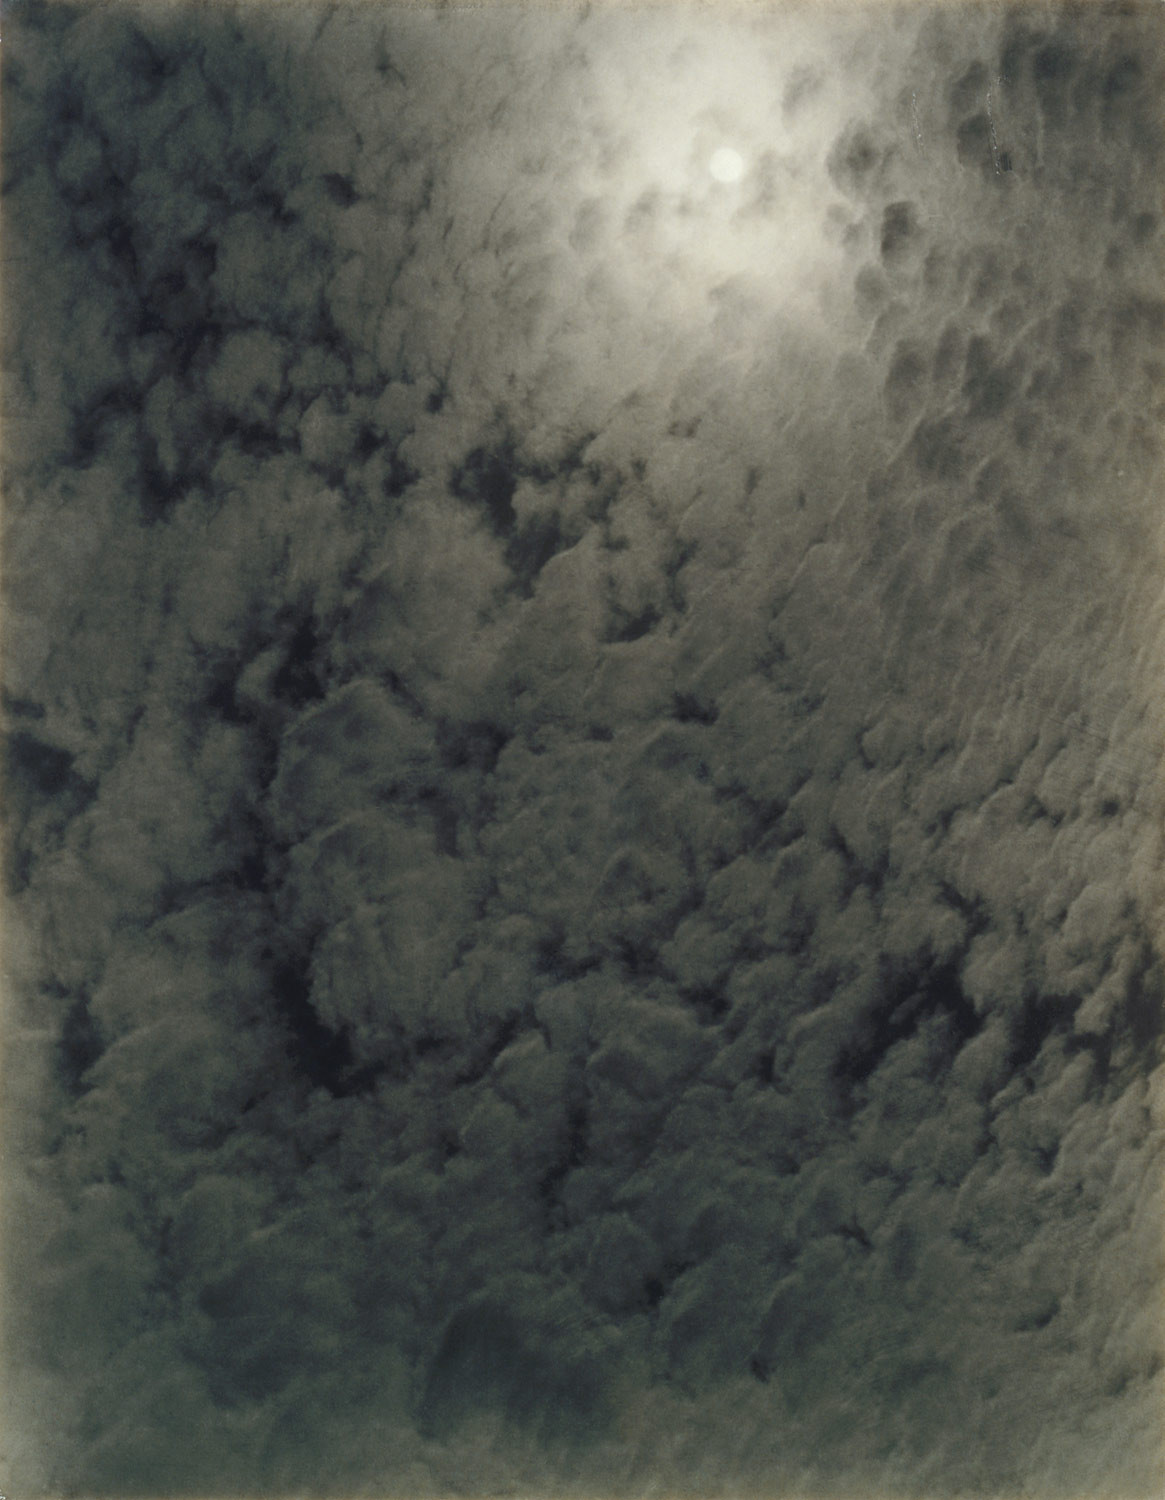 Alfred Stieglitz, Equivalent, 1926